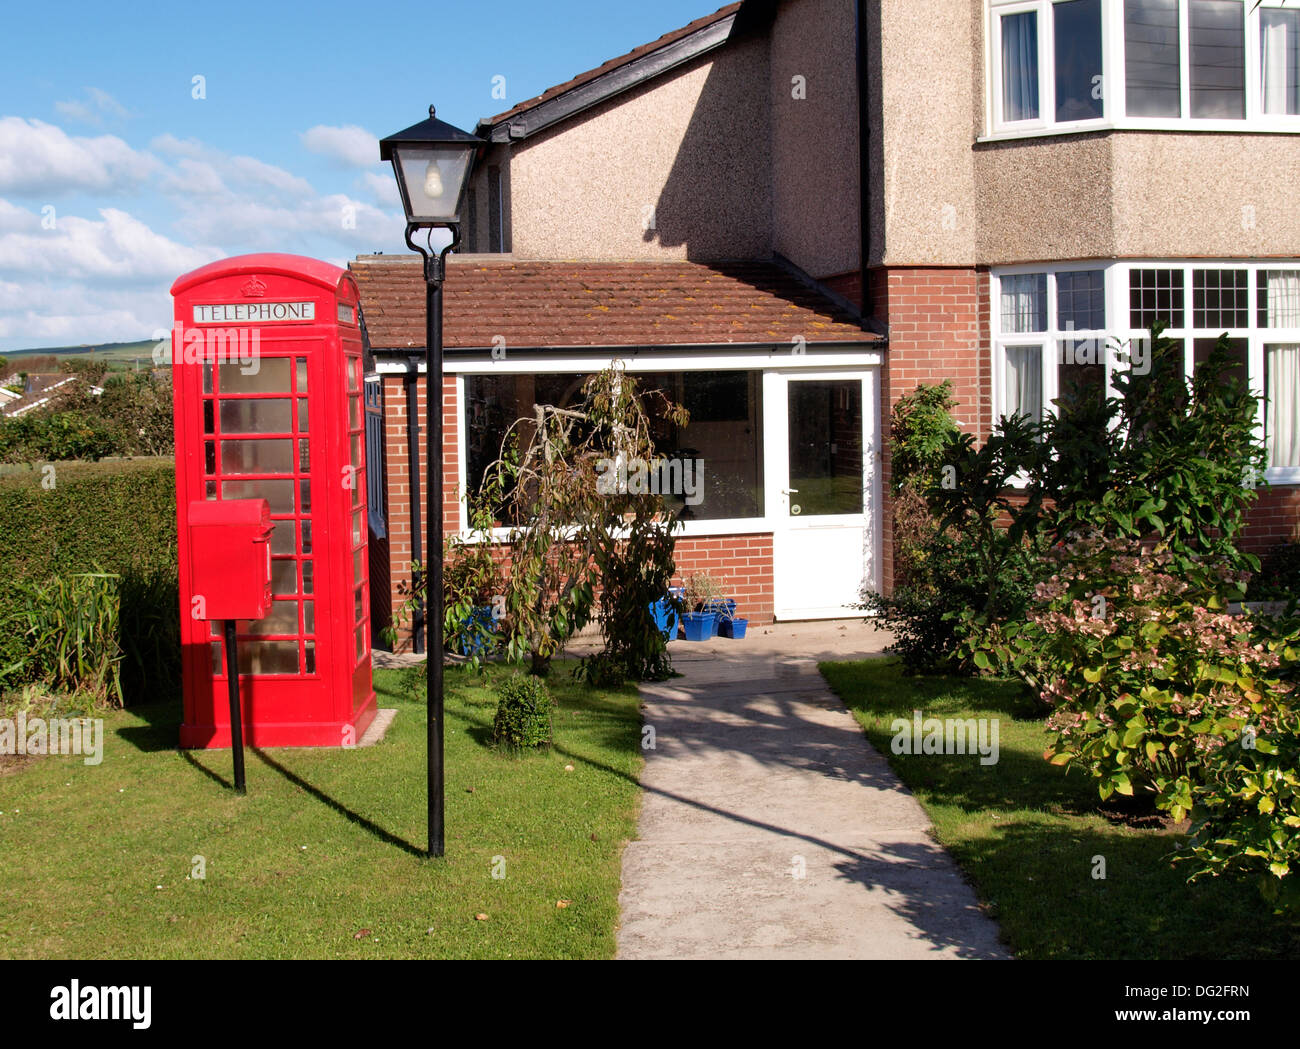 Jardin avec une boîte aux lettres rouge, téléphone rouge fort et d'un lampadaire, Bude, Cornwall, UK Banque D'Images